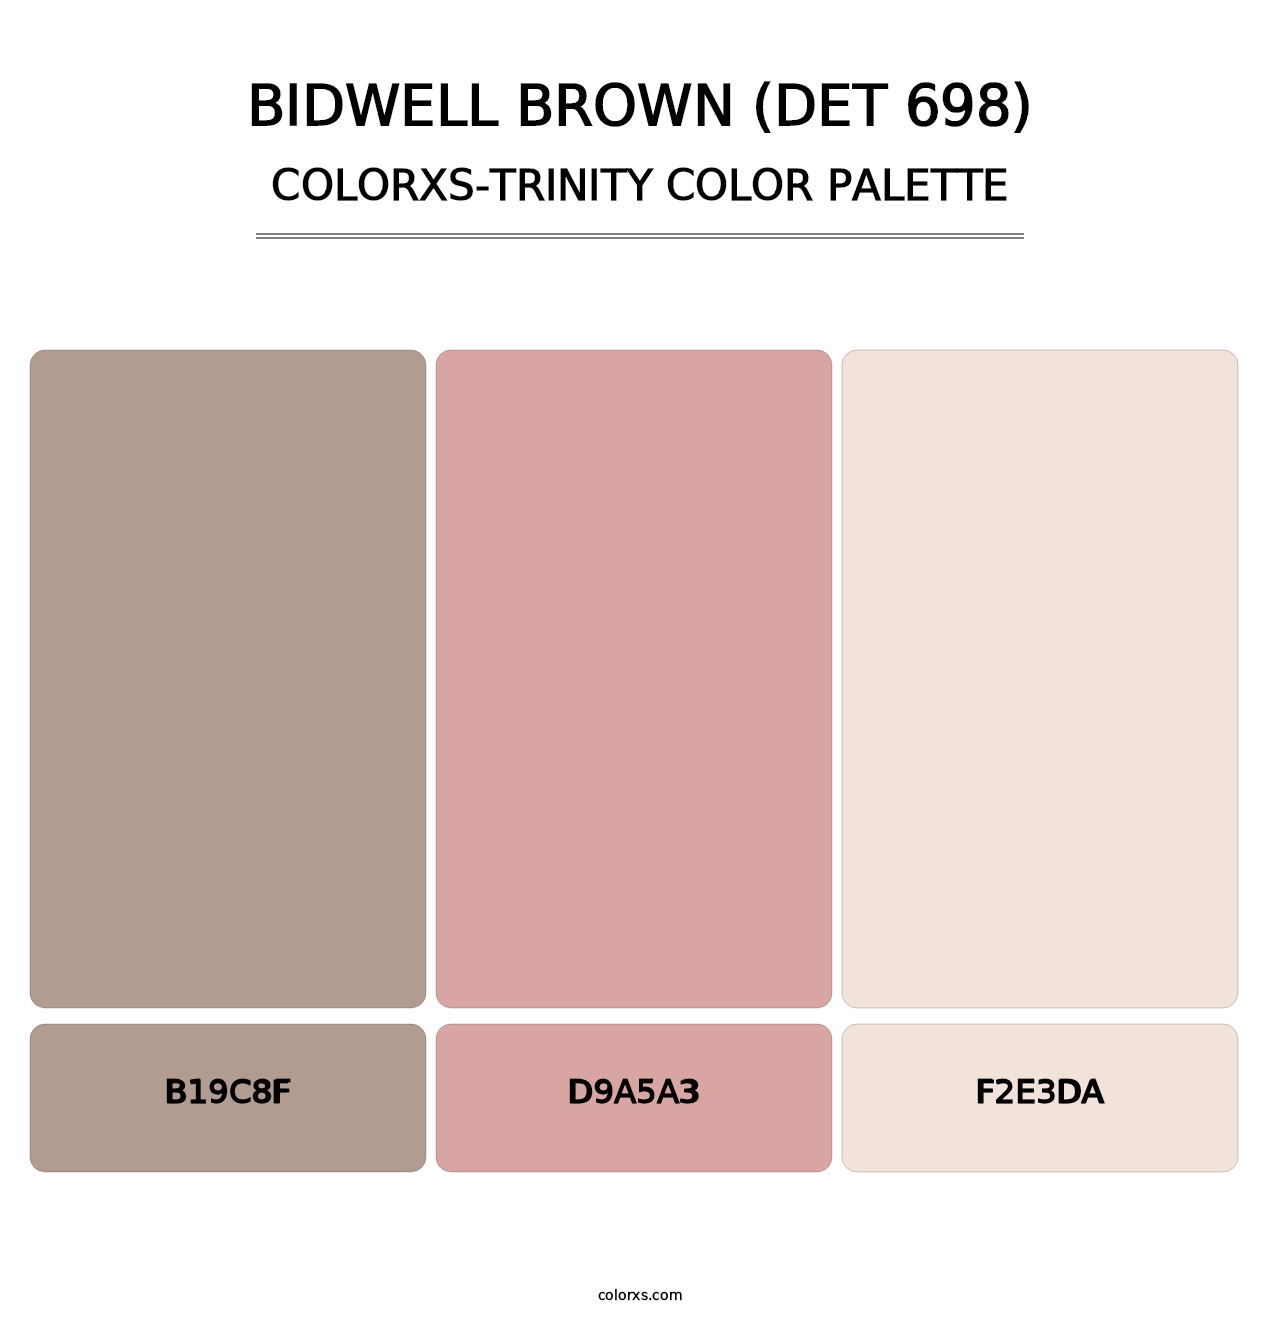 Bidwell Brown (DET 698) - Colorxs Trinity Palette